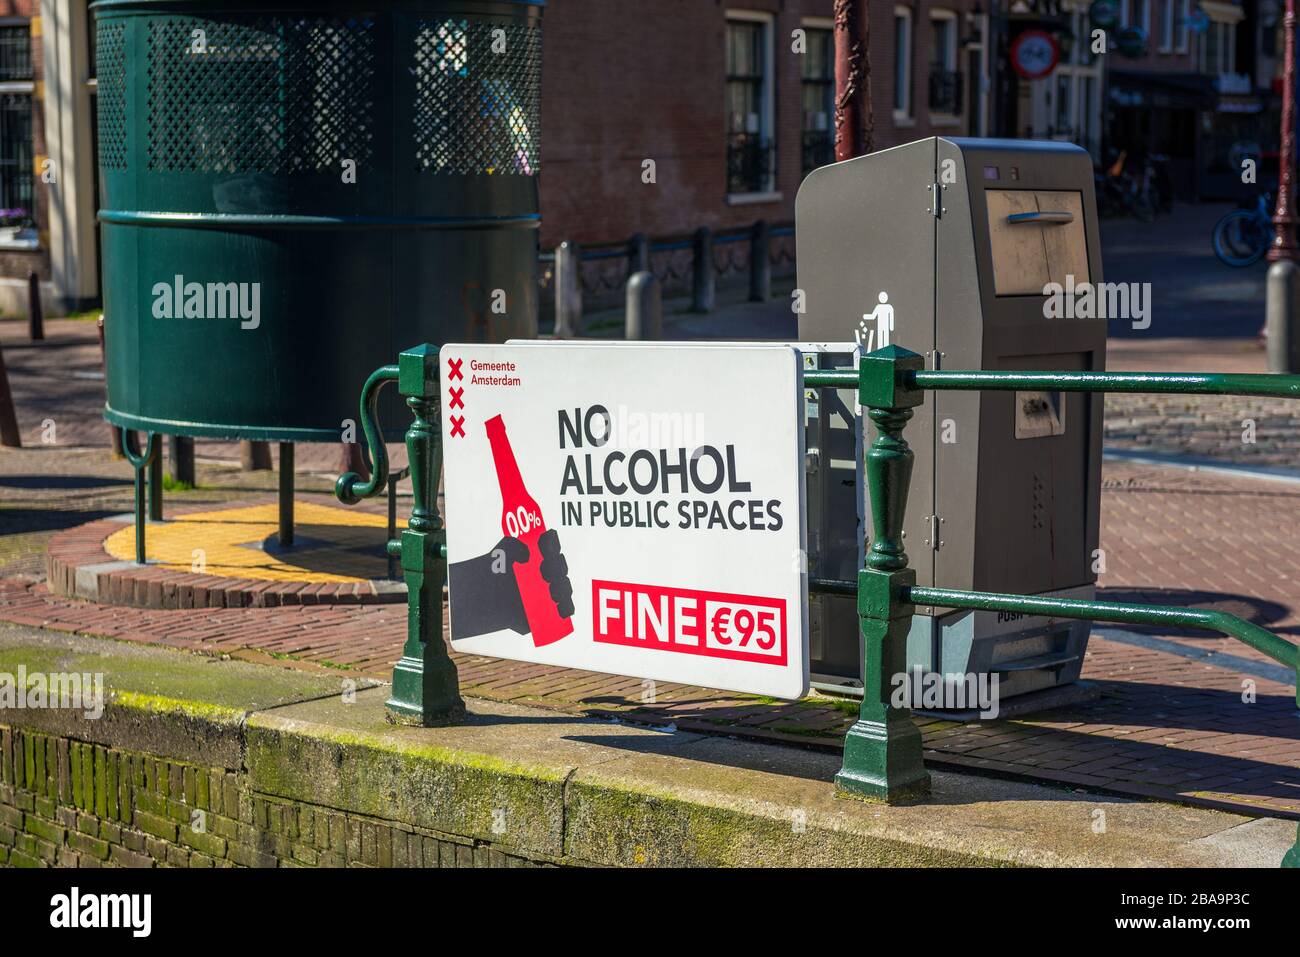 Cartello segnaletico in inglese vicino a un canale con la scritta "No alcohol in Public Spaces" nel quartiere a luci rosse nel centro di Amsterdam. Foto Stock